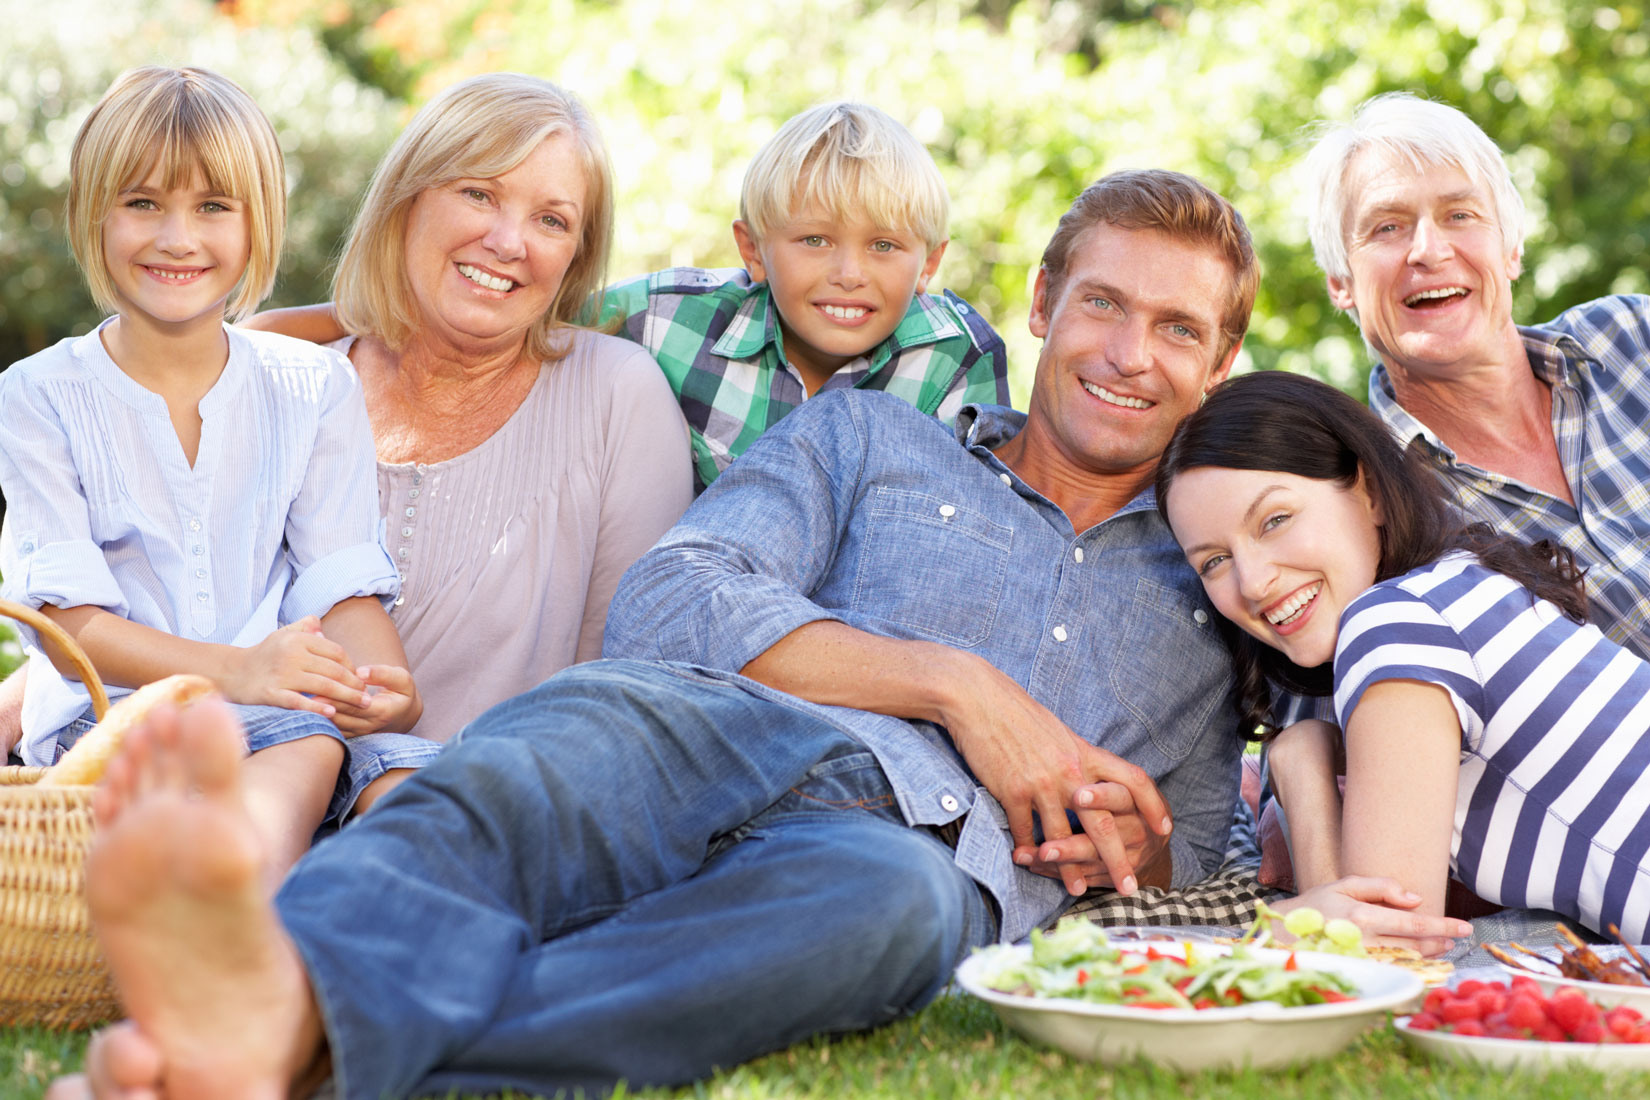 Fotografija prikazuje veselu obitelj(otac, majka, baka, djed i dvoje djece) koja sjedi na travi. Na travi uz njih je hrana. Obitelj je na izletu.